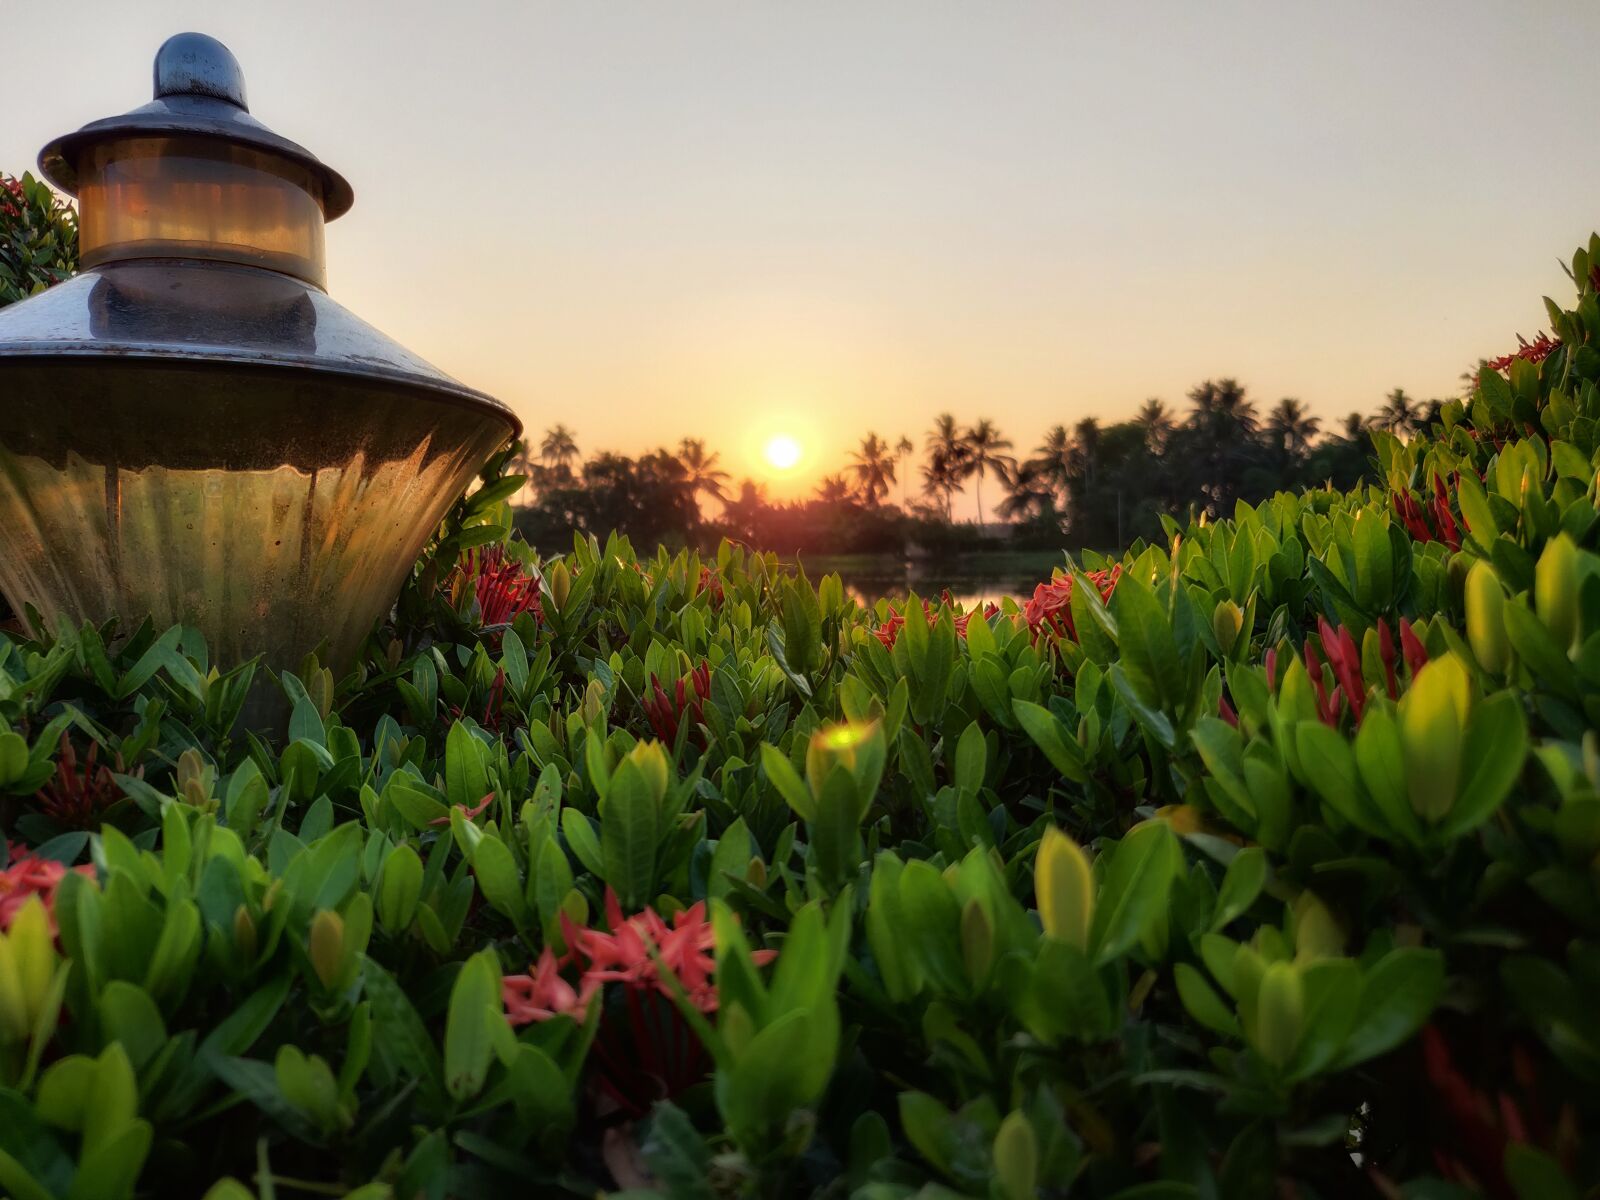 OnePlus A6010 sample photo. Sunset, beauty, kerala photography